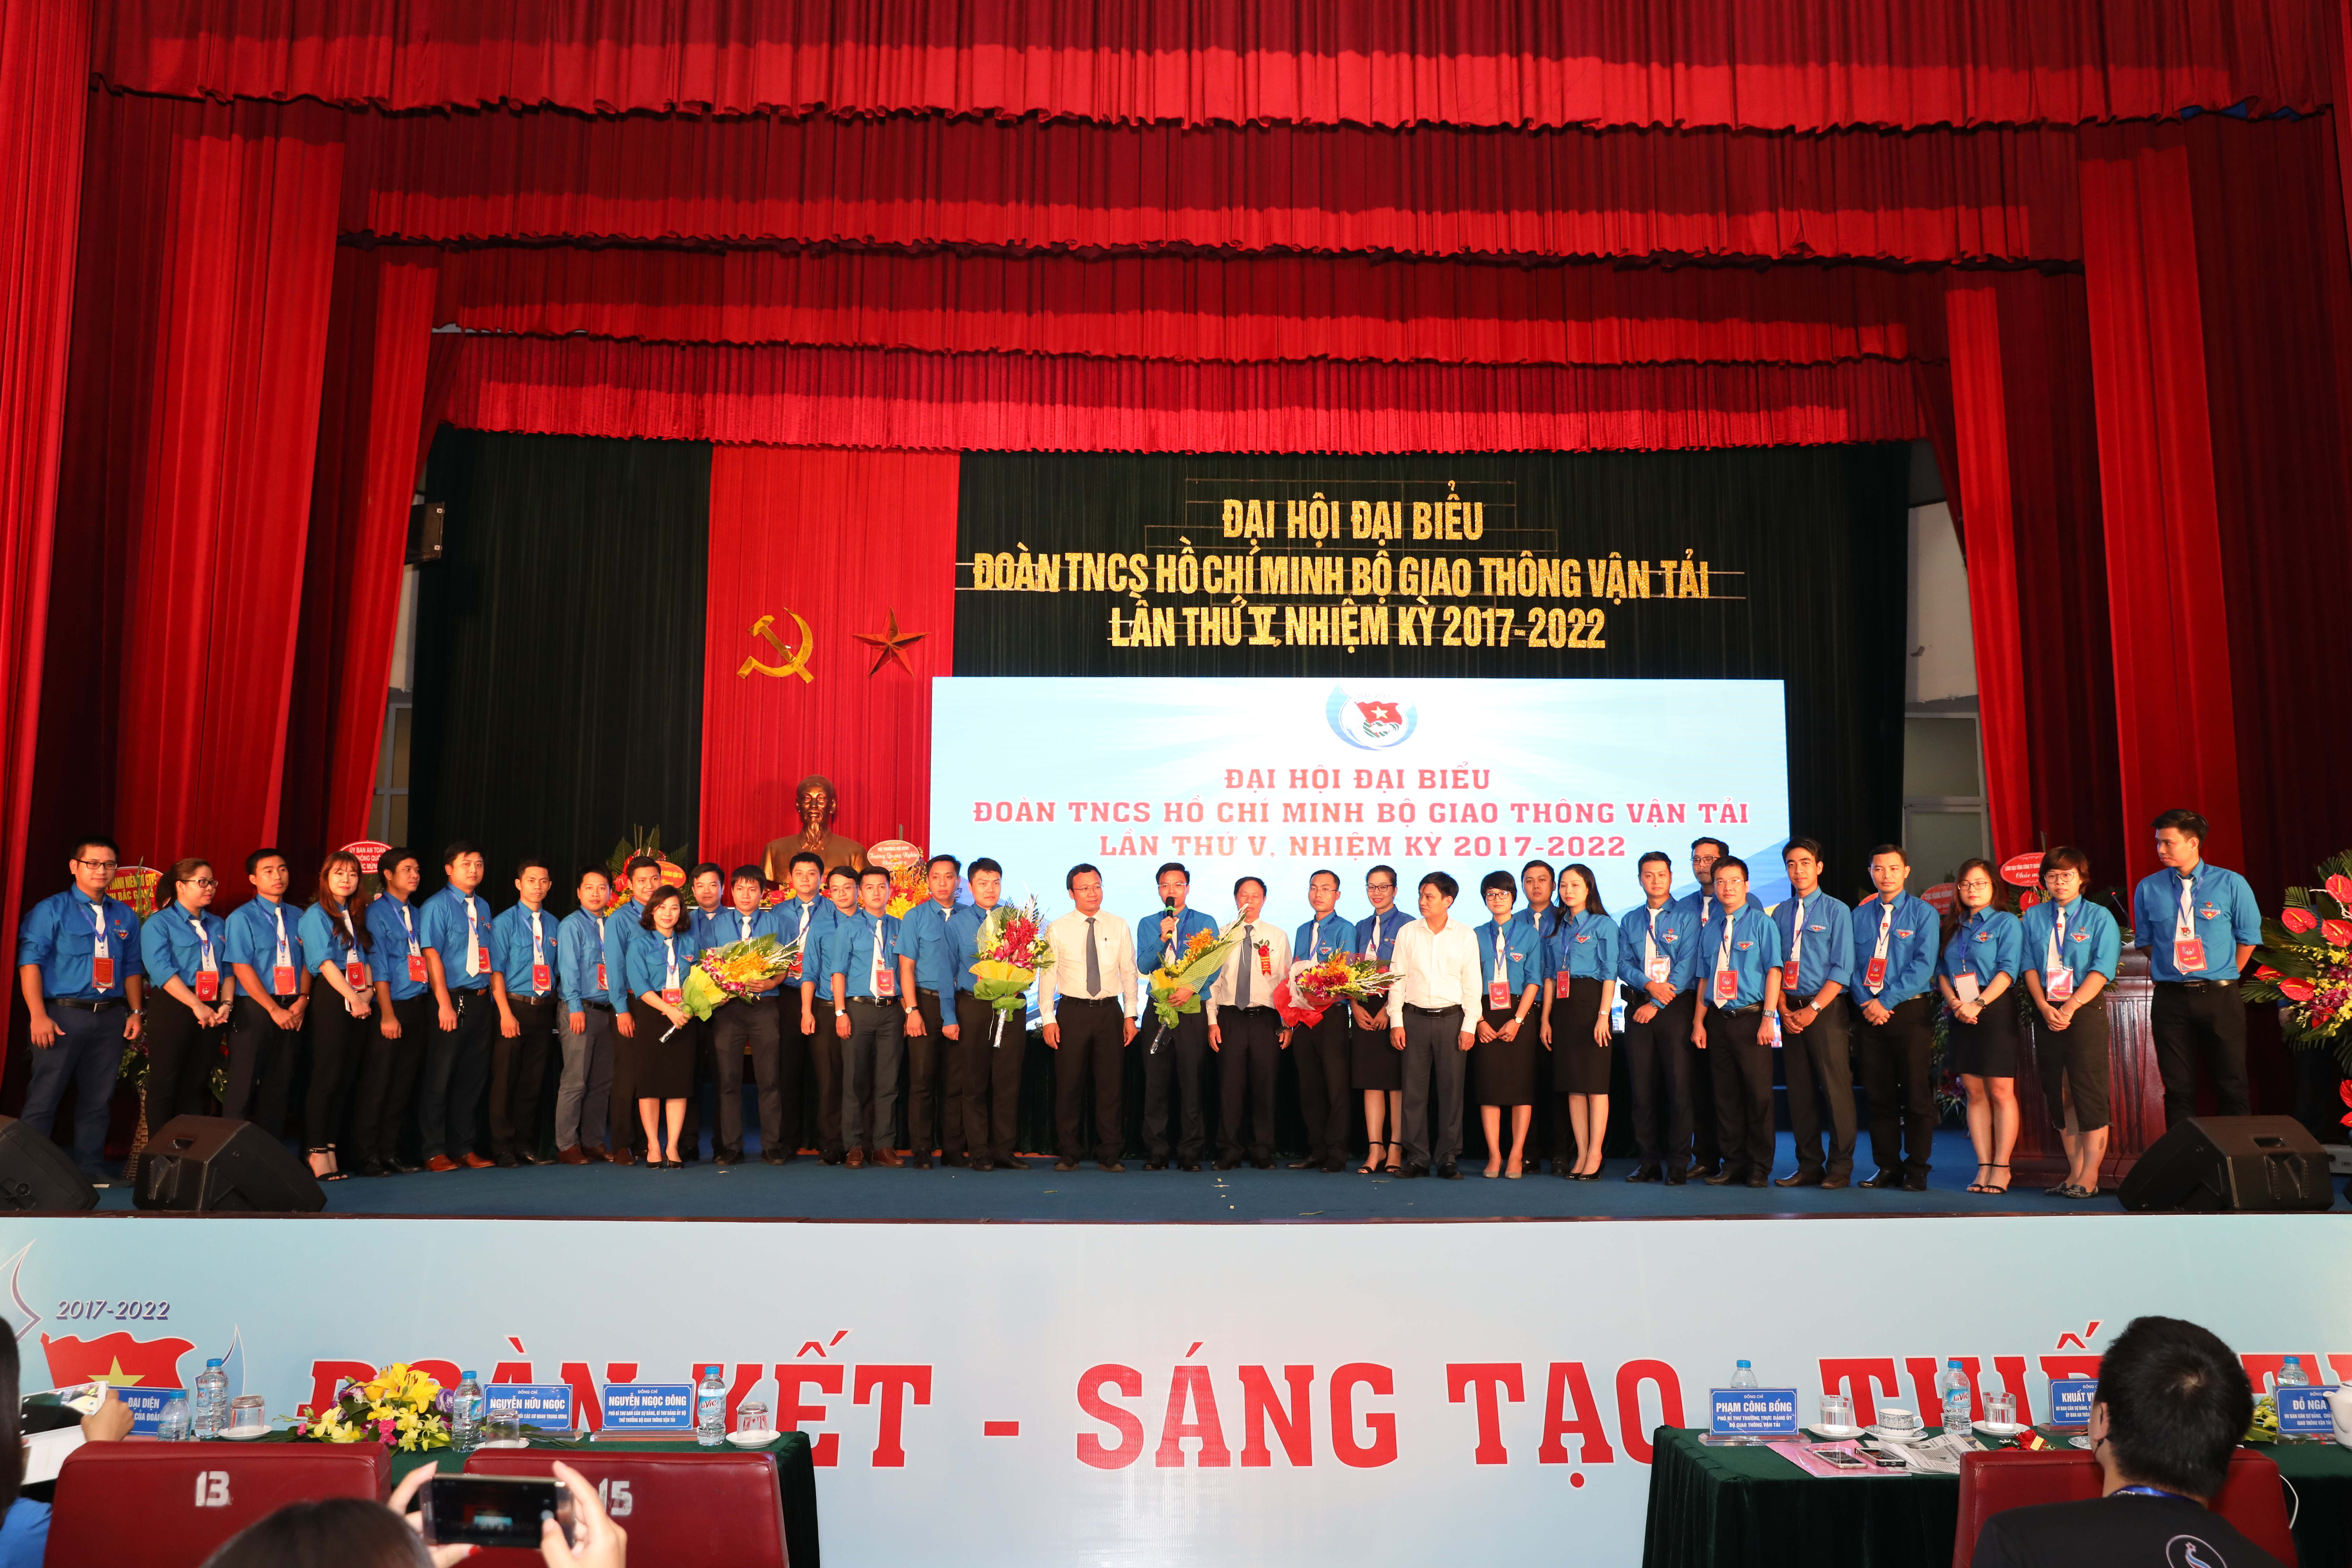 Đoàn đại biểu Thanh niên Tổng công ty Quản lý bay Việt Nam tham gia Đại hội Đại biểu Đoàn TNCS Hồ Chí Minh Bộ Giao thông vận tải lần thứ V, nhiệm kỳ 2017 - 2022